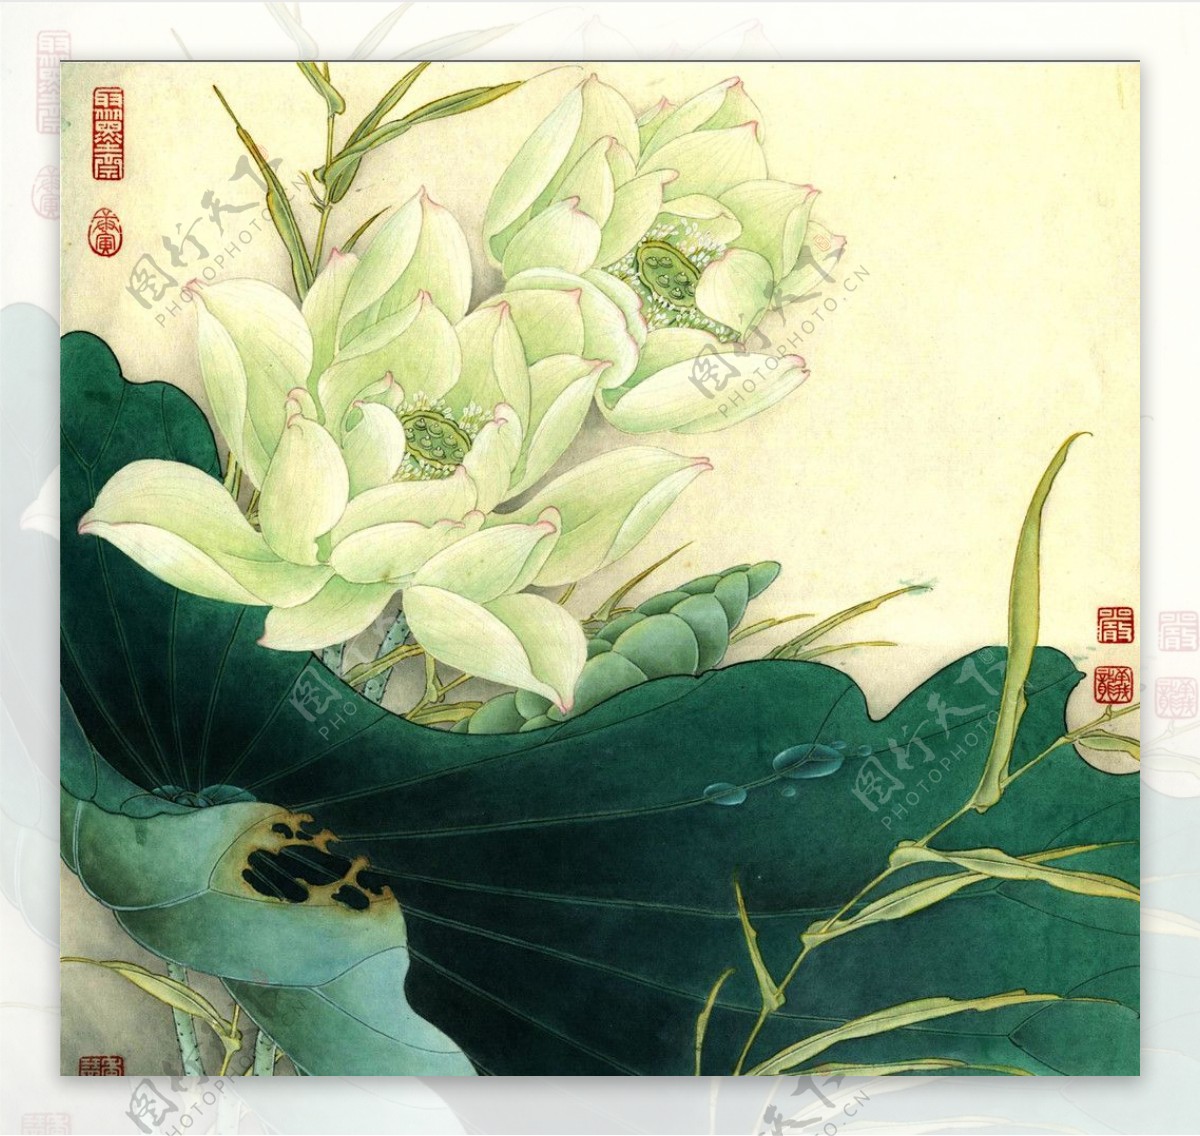 清新淡雅的中国风古典简约背景系列桌面壁纸高清-设计创意-壁纸下载-美桌网